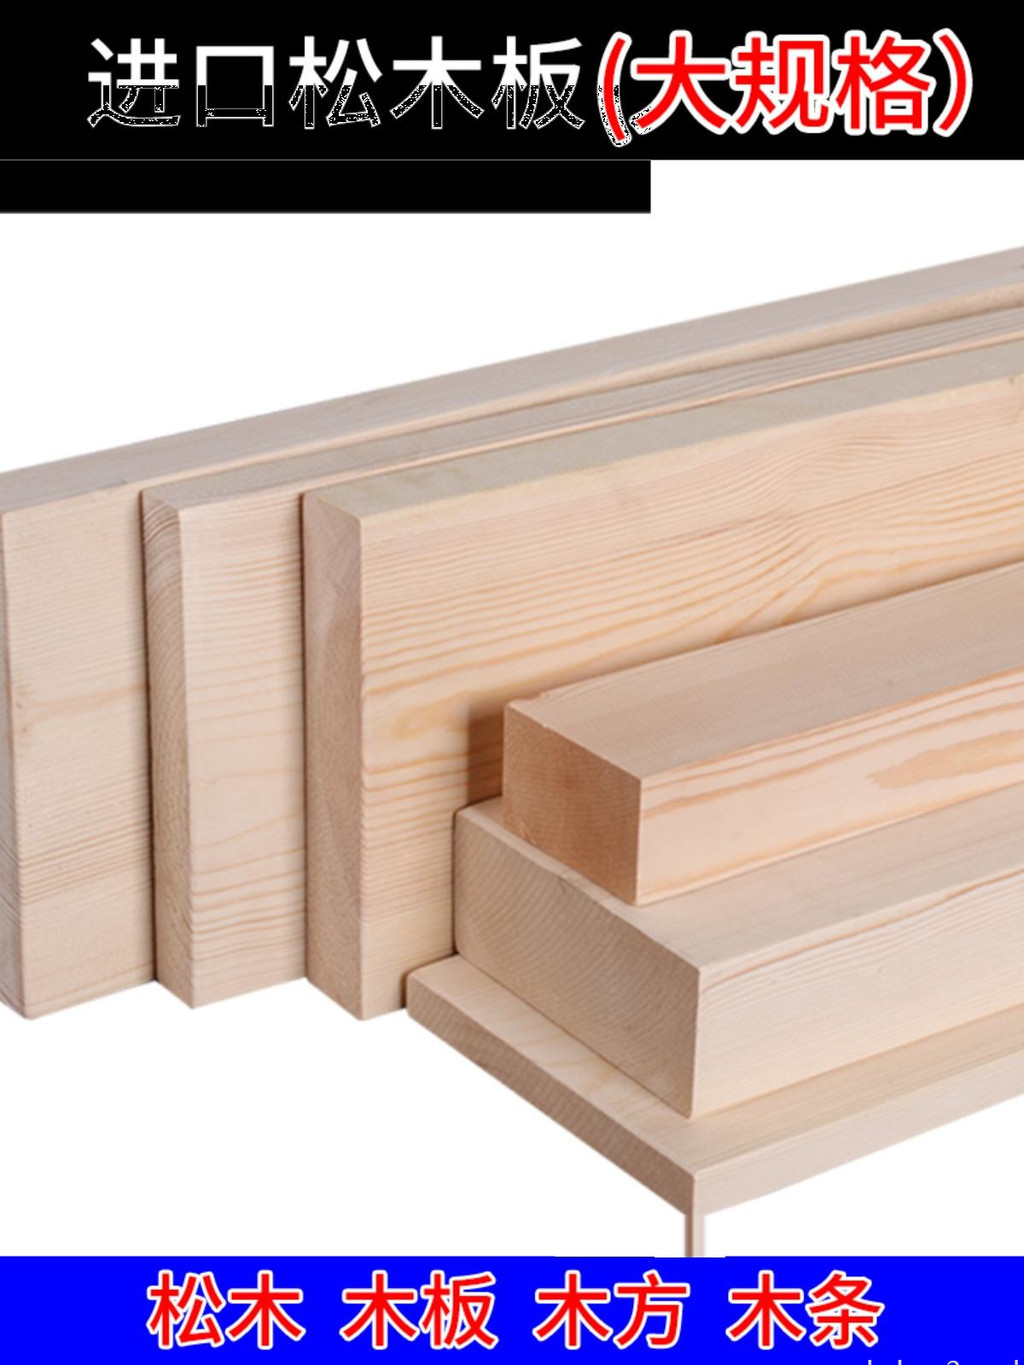 松木條實木材料木條子長條diy原木料木方定製家用裝潢木板木方條